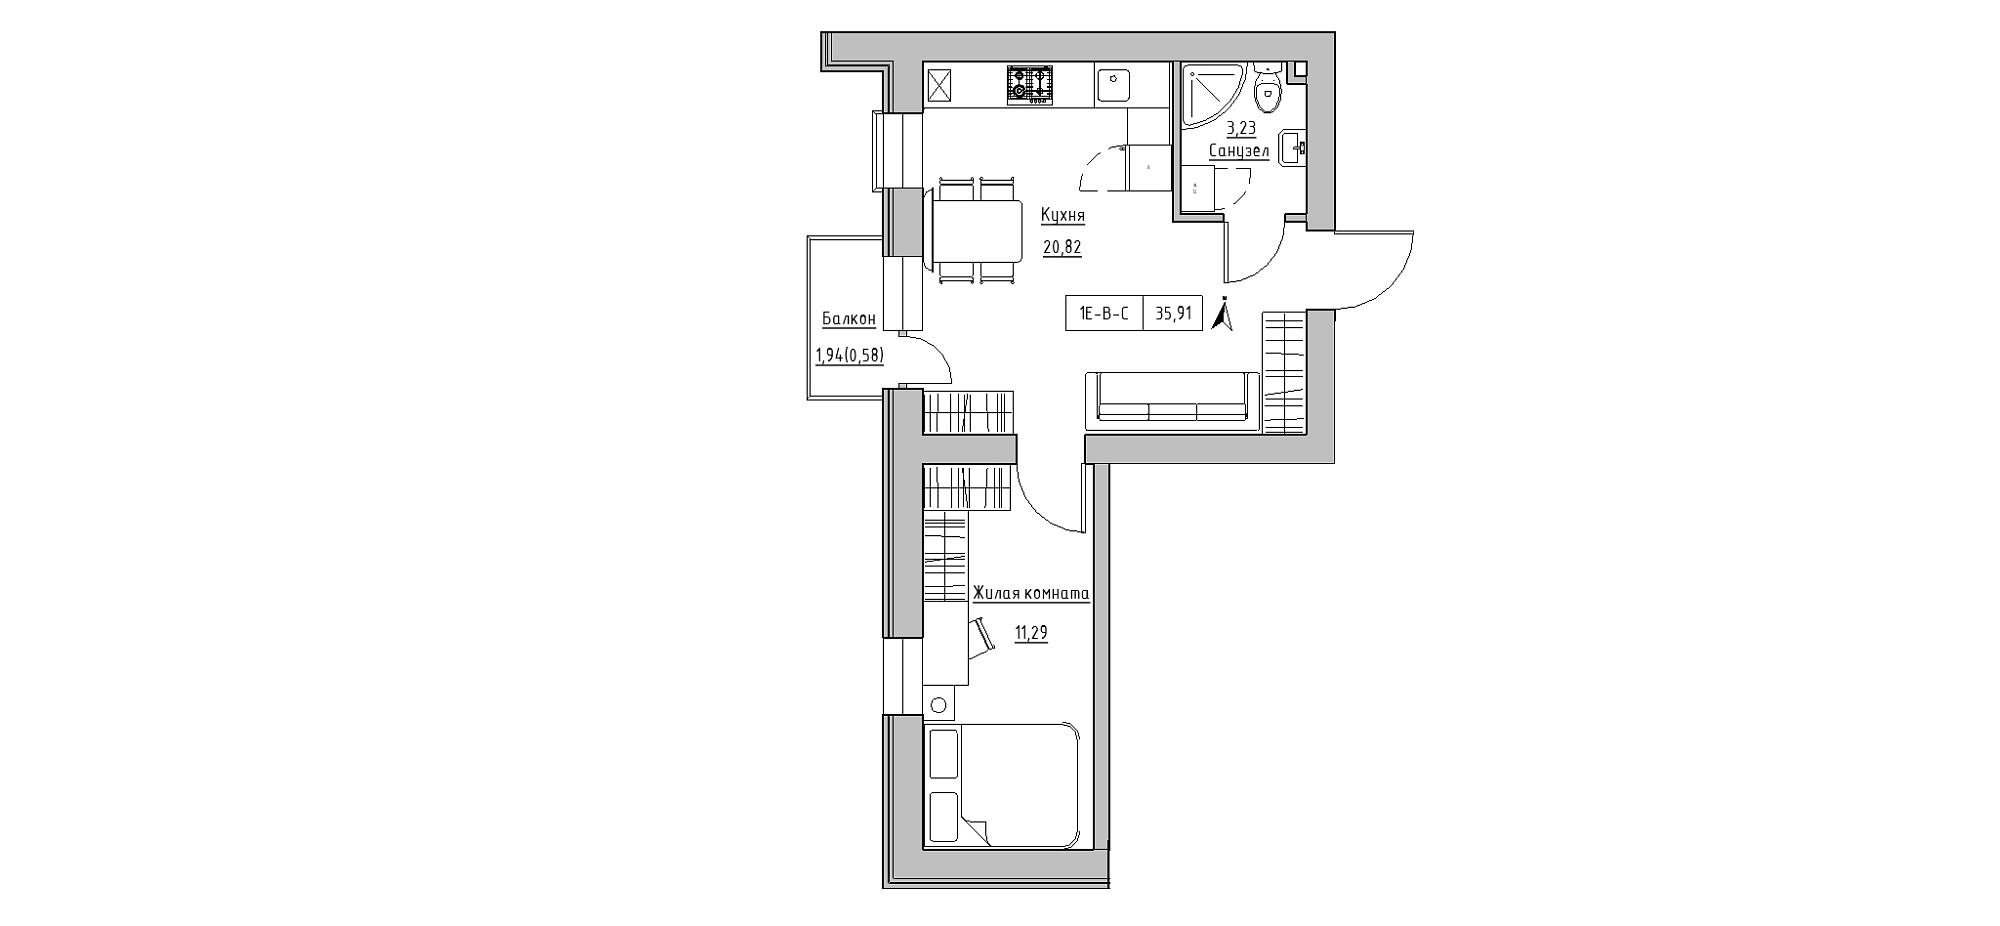 Планування 1-к квартира площею 35.91м2, KS-020-03/0009.